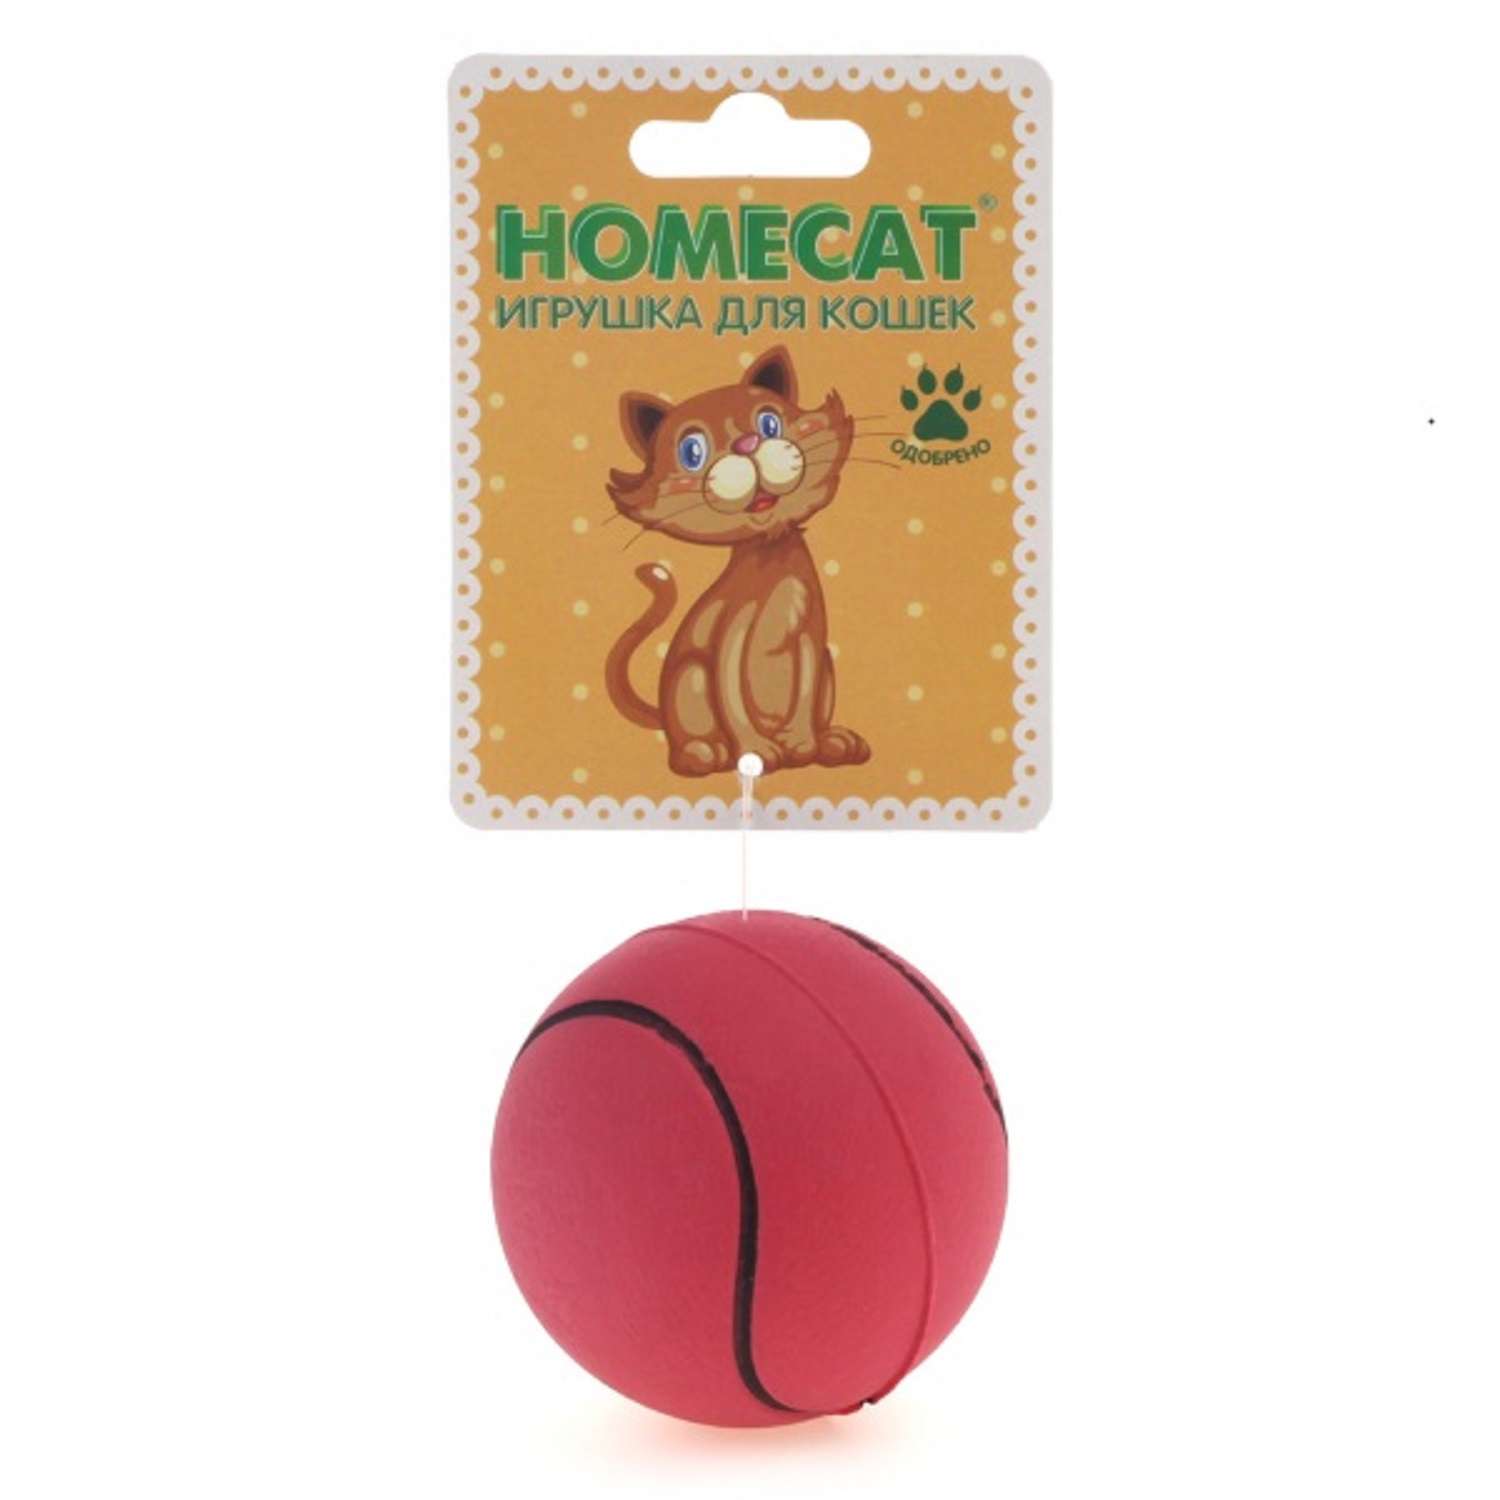 Игрушка для кошек Homecat мяч спортивный 6.3см - фото 1